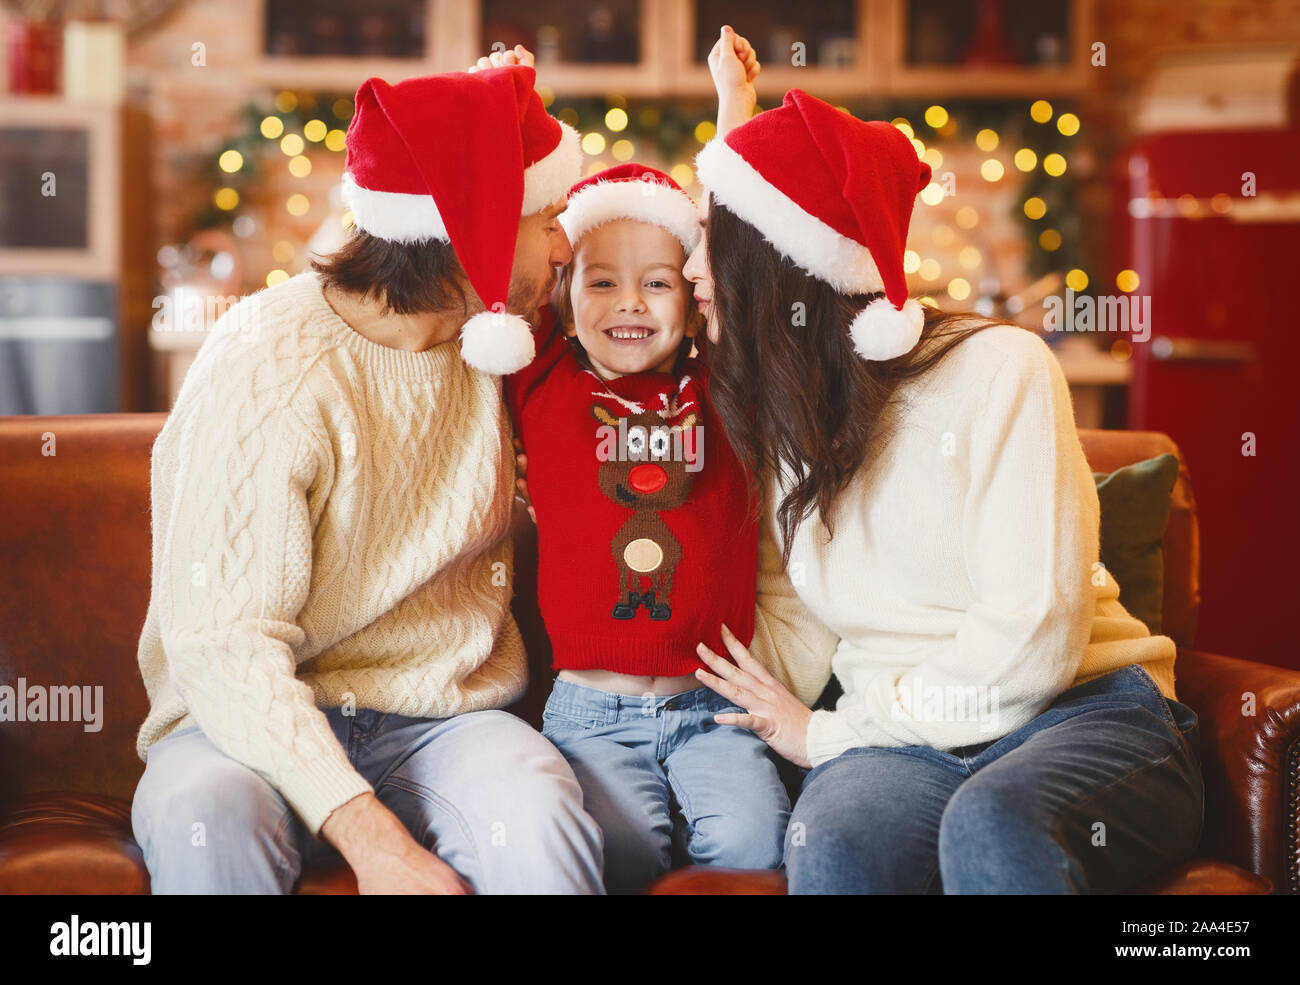 Festliche Eltern küssen glücklich, kleines Mädchen, Weihnachten gemeinsam feiern. Stockfoto